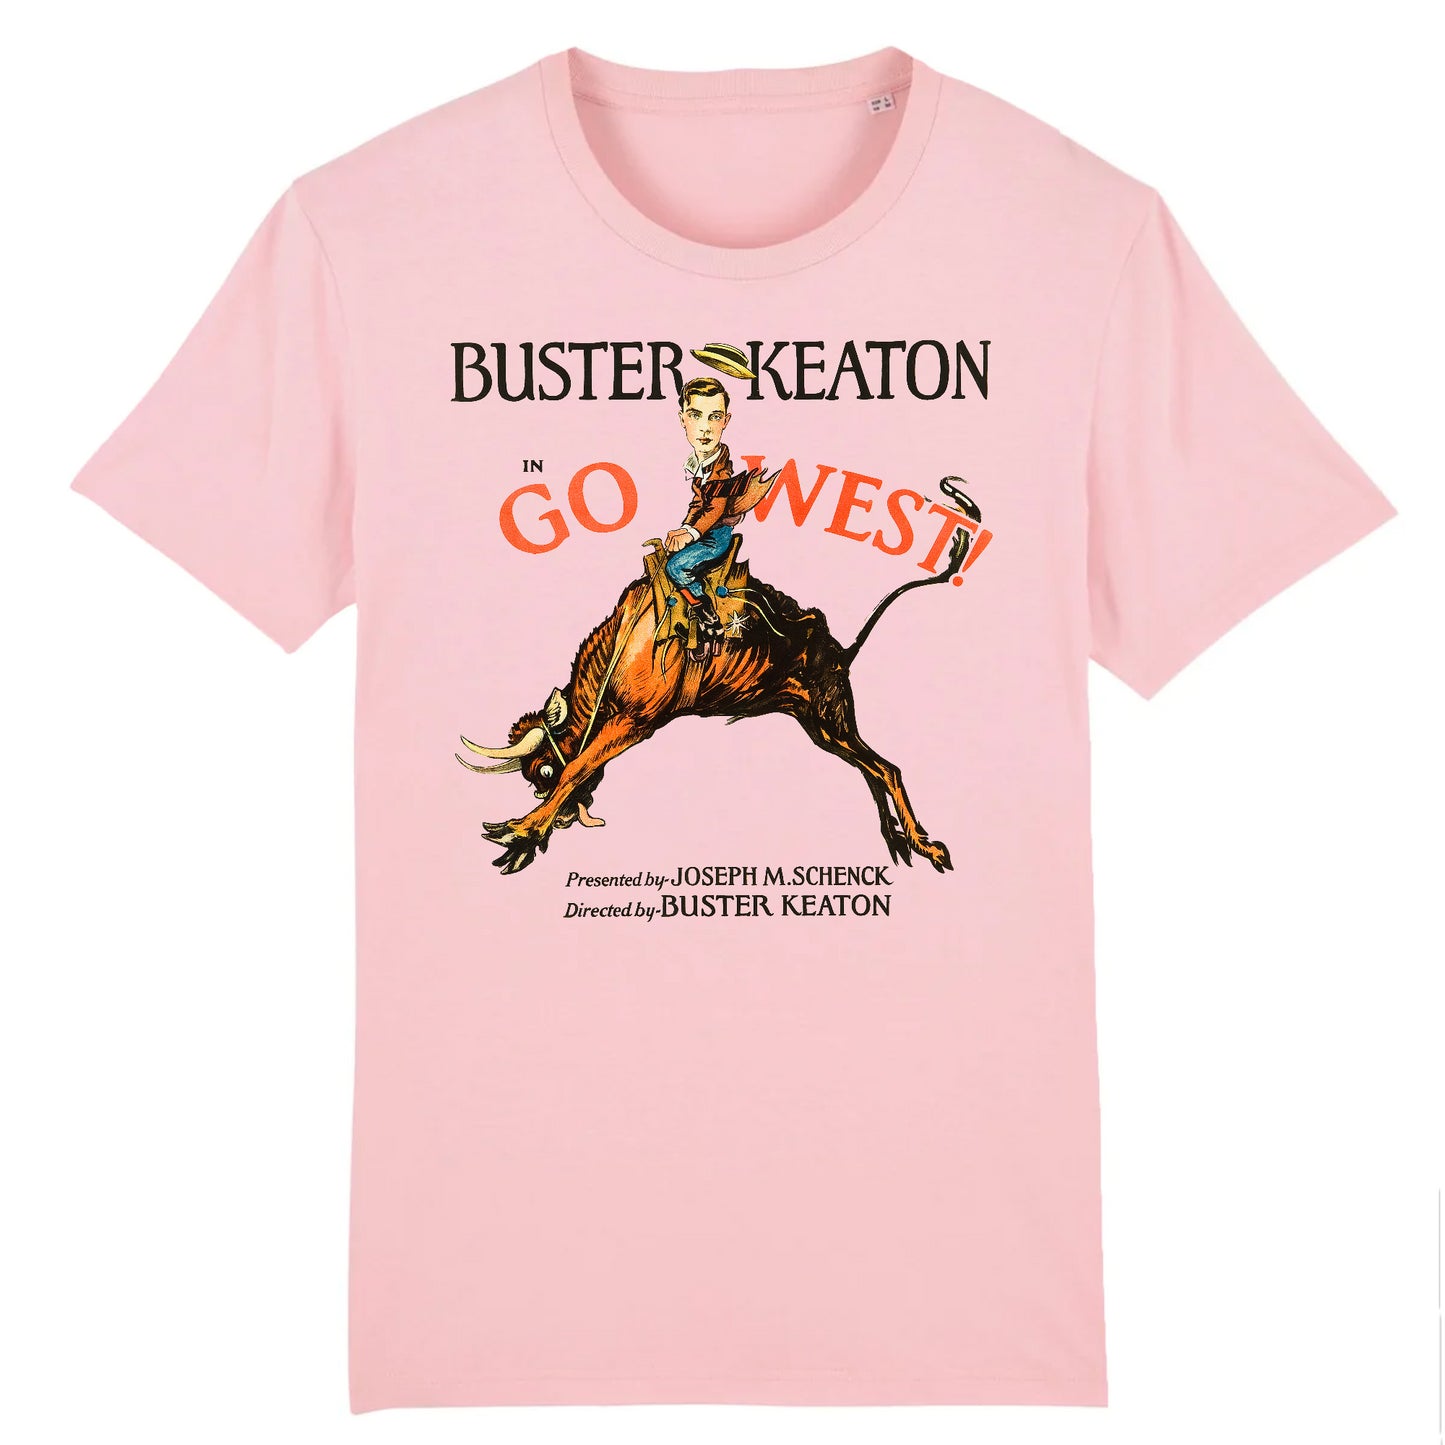 Buster Keaton dans Go West, 1925 - T-shirt en coton biologique